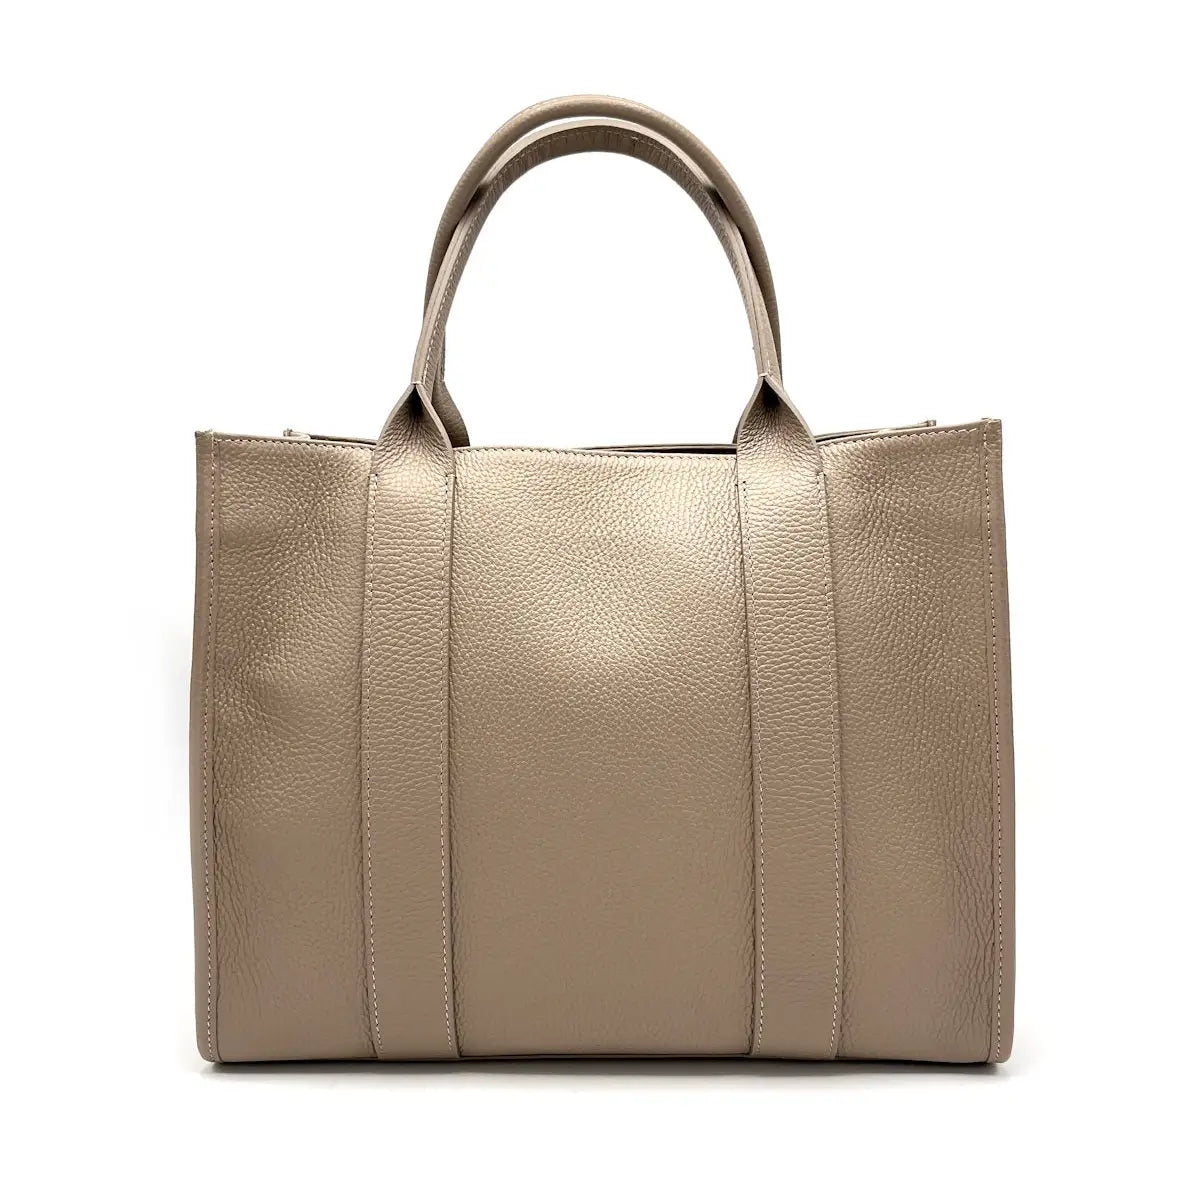 Suie Valentini srl 112428 Taupe Genuine Leather Handbag